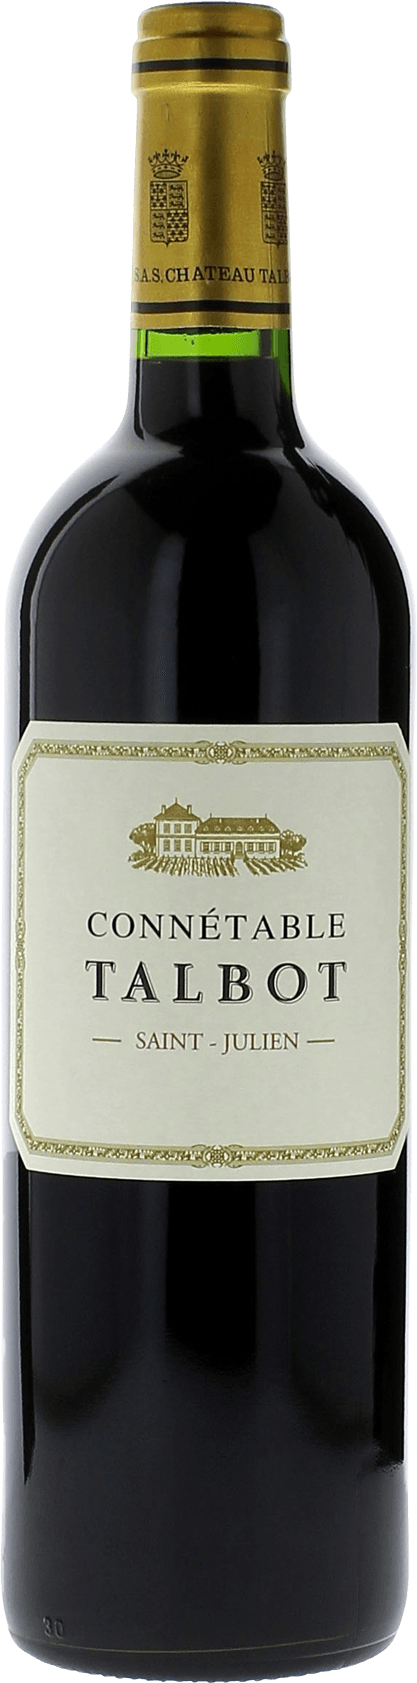 Connetable talbot 2019 2me vin de TALBOT Saint-Julien, Bordeaux rouge